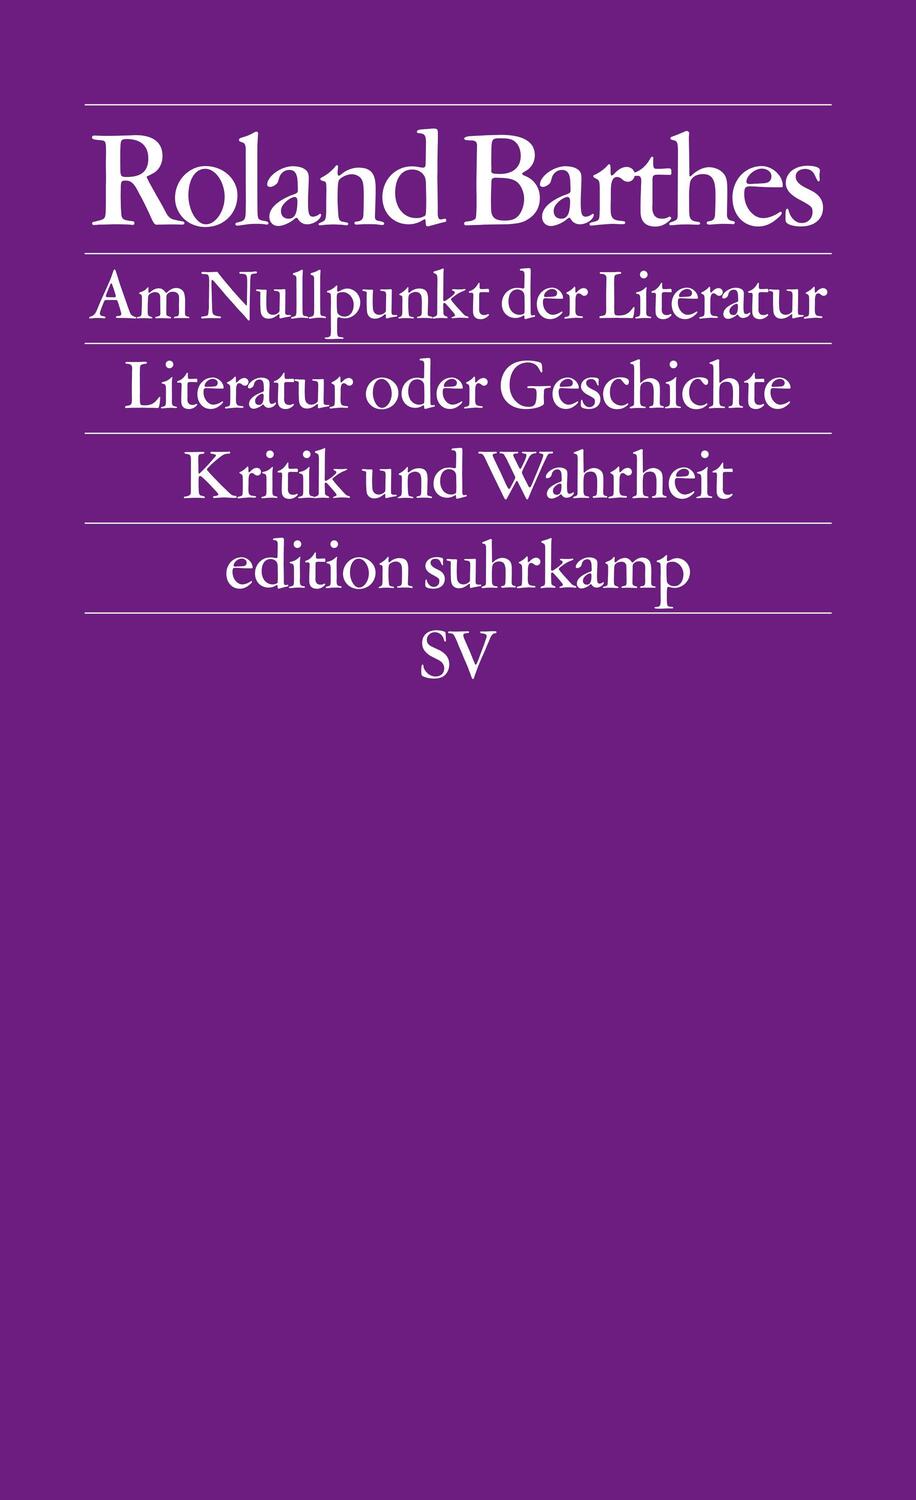 Am Nullpunkt der Literatur / Literatur oder Geschichte / Kritik und.Wahrheit - Barthes, Roland